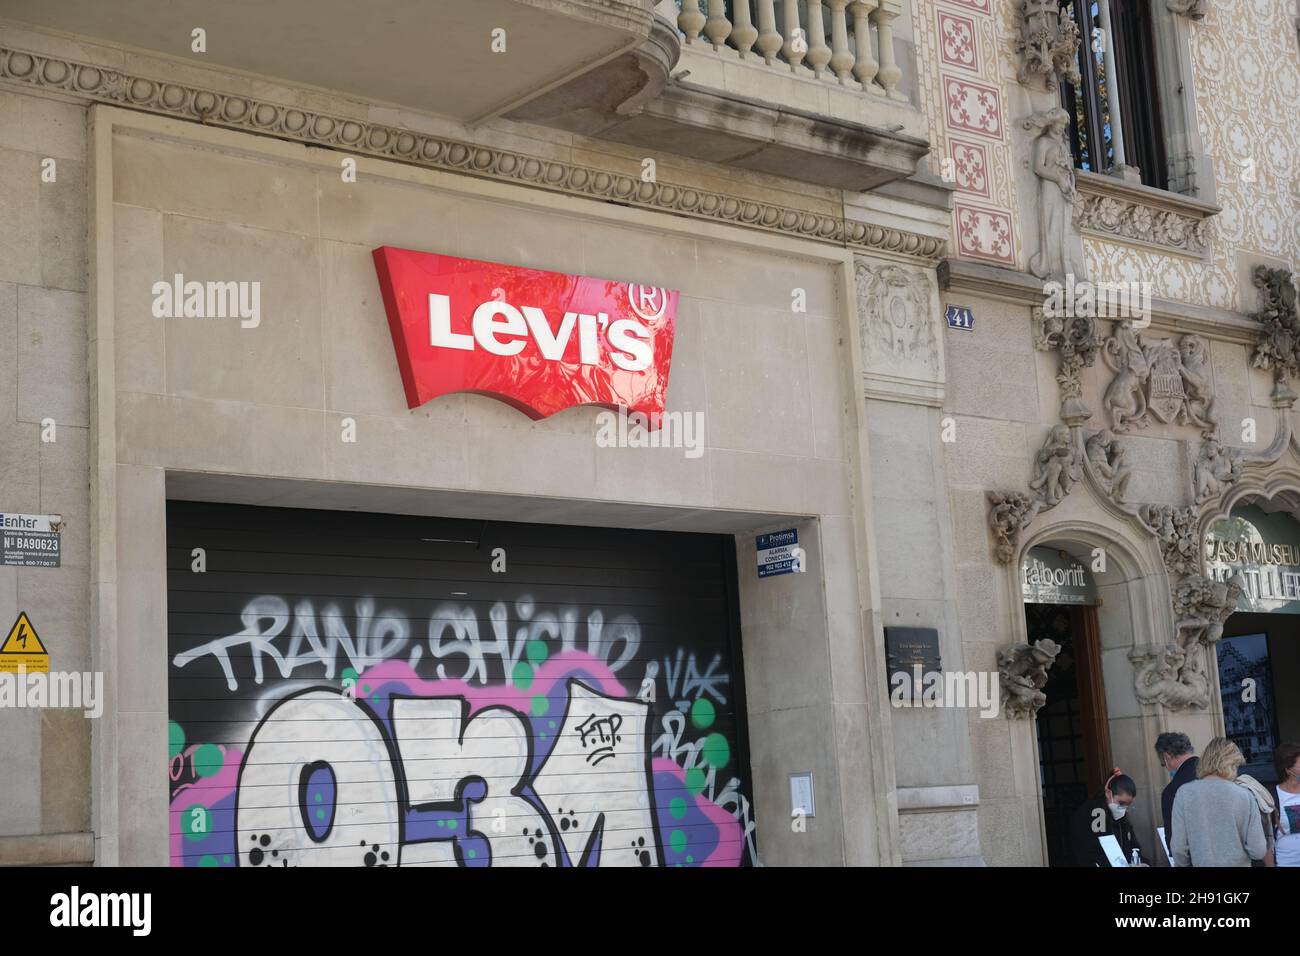 Barcelona, Spanien - 5. November 2021: Levis Levi Kleidung Marke Schild draußen auf der Straße, illustrative Editorial. Stockfoto